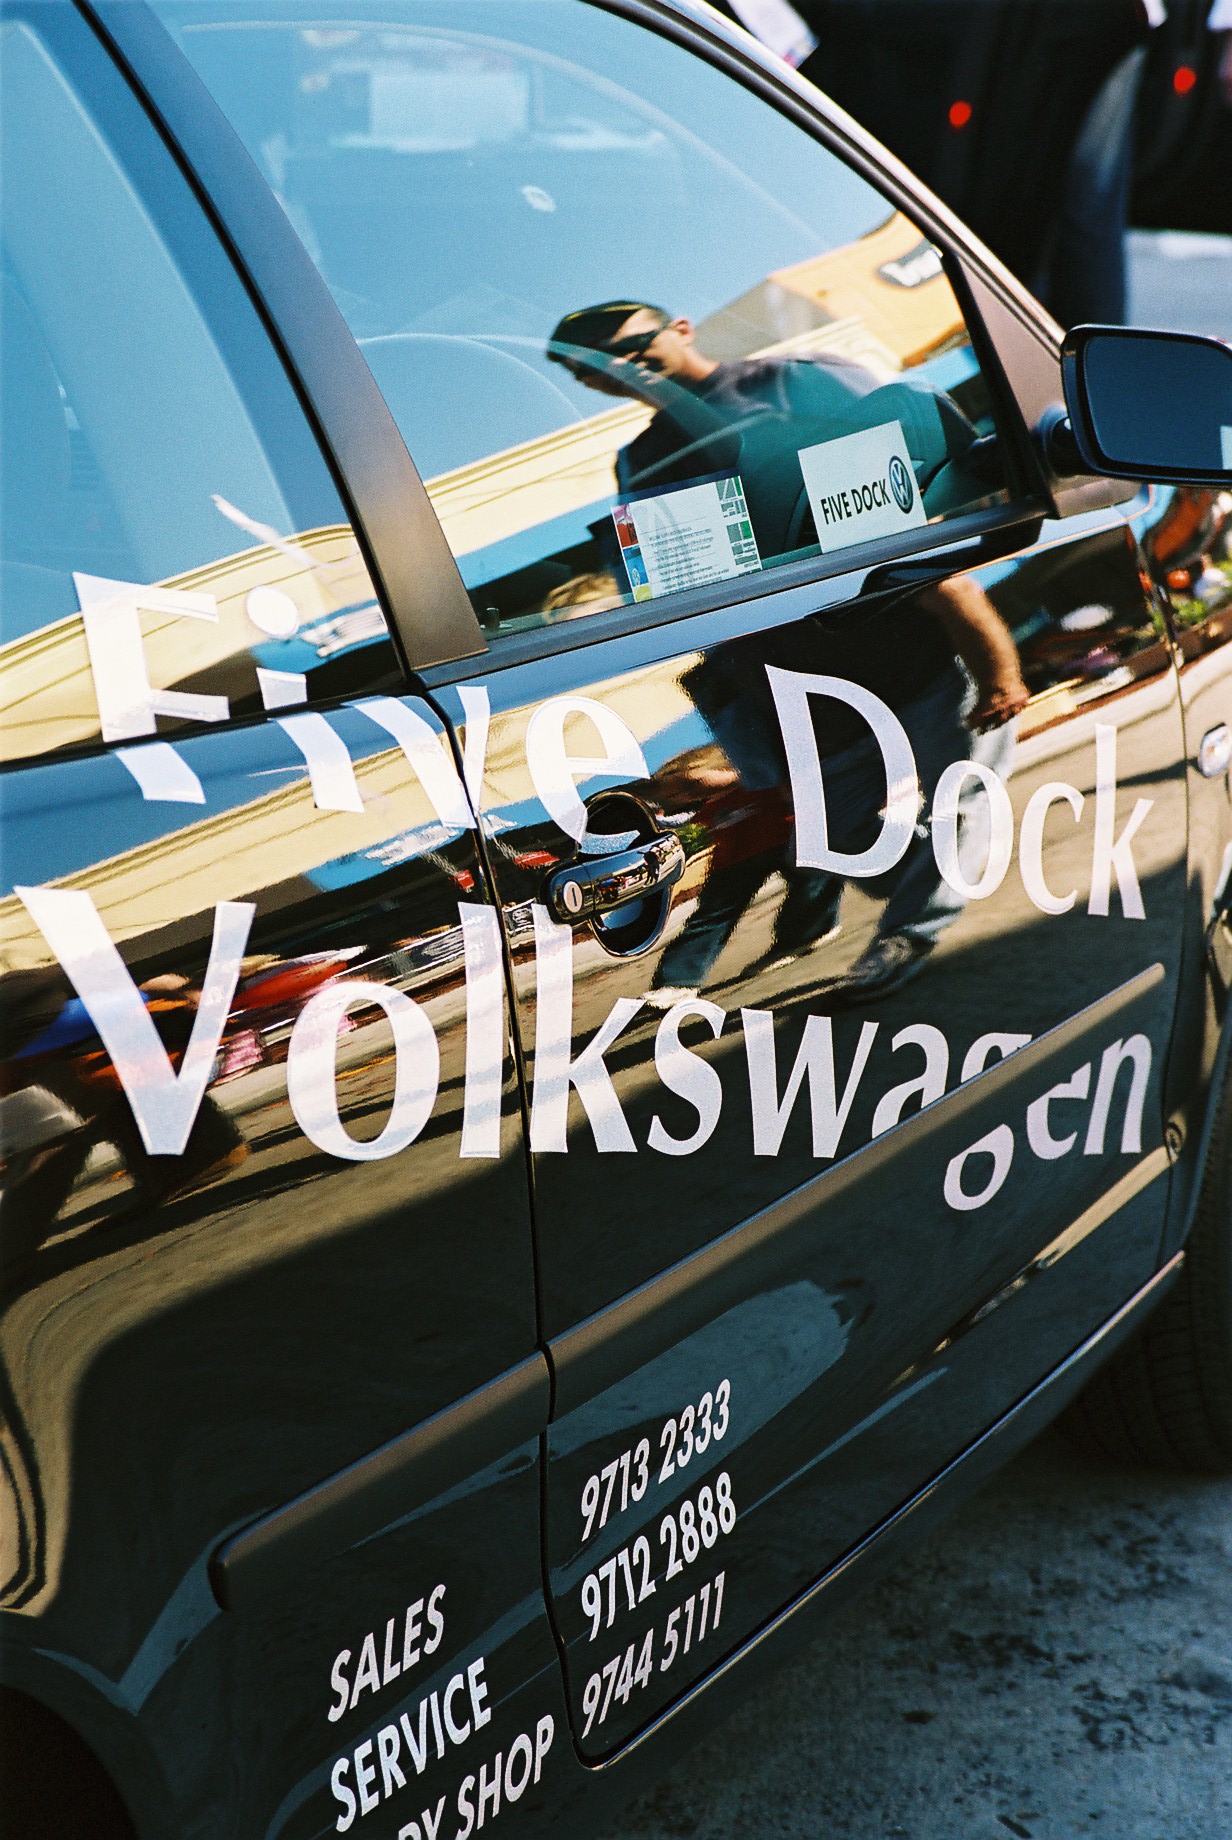 five dock Volkswagen car display